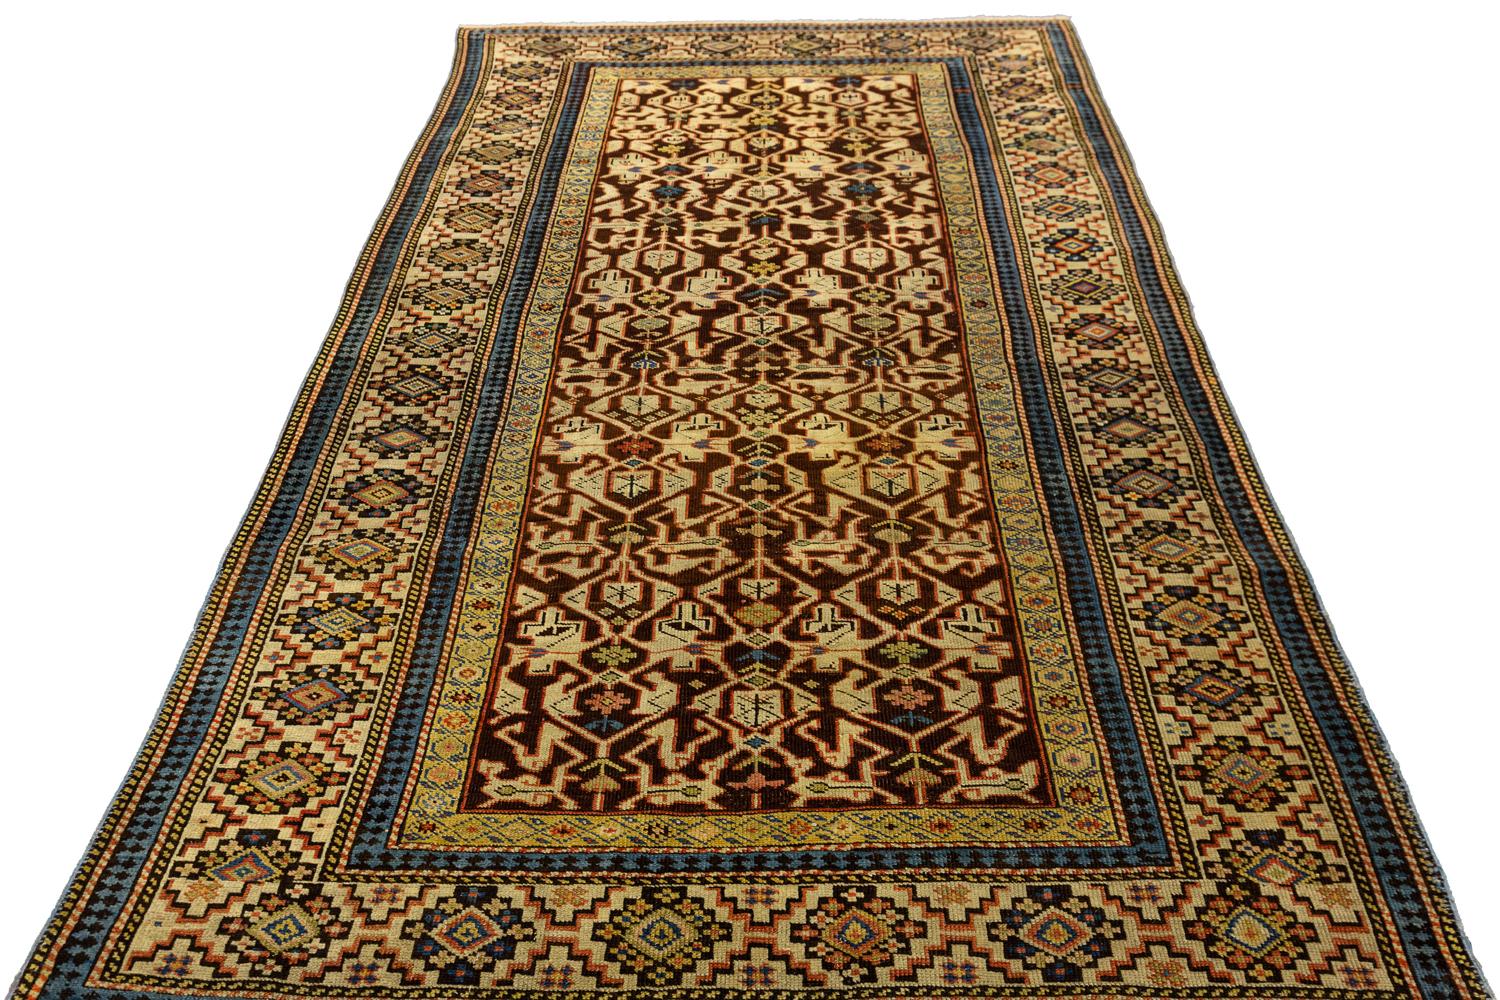 Dies ist ein seltener antiker kaukasischer Konakend-Teppich mit einem erstaunlich kühnen Design und auffälligen geometrischen Formen. Die Farben sind kräftig und lebendig, und der Teppich ist in ausgezeichnetem Zustand. Es wäre eine schöne Ergänzung